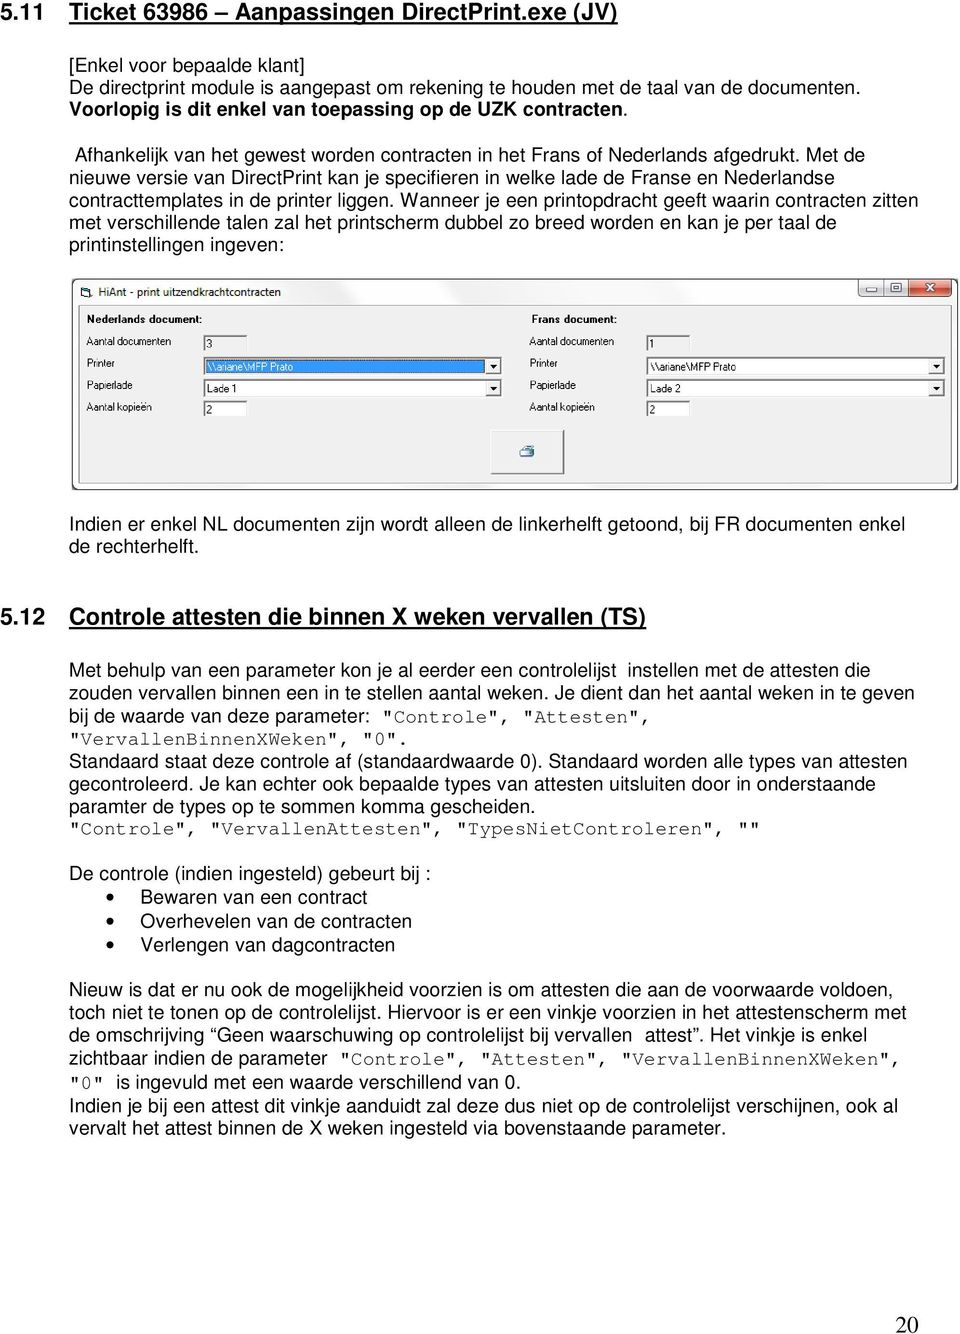 Met de nieuwe versie van DirectPrint kan je specifieren in welke lade de Franse en Nederlandse contracttemplates in de printer liggen.